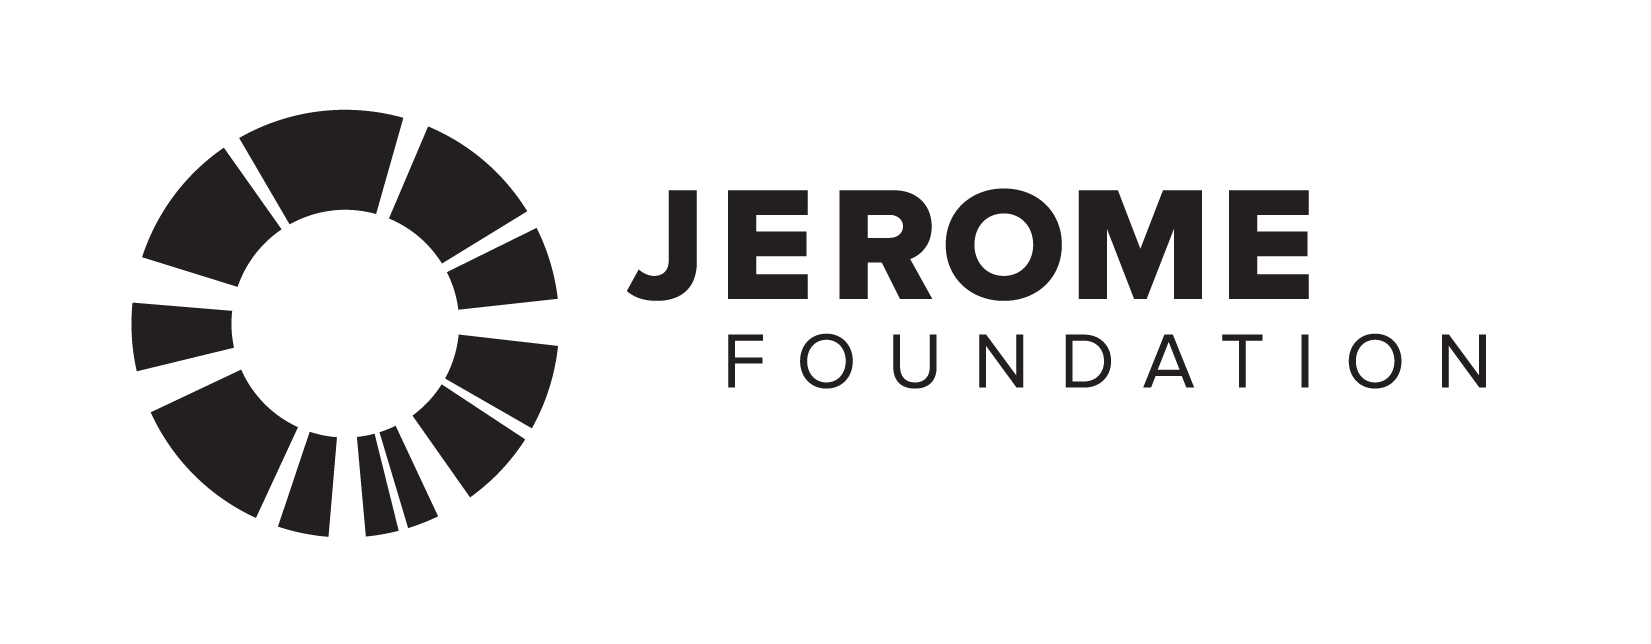 Jerome Foundation